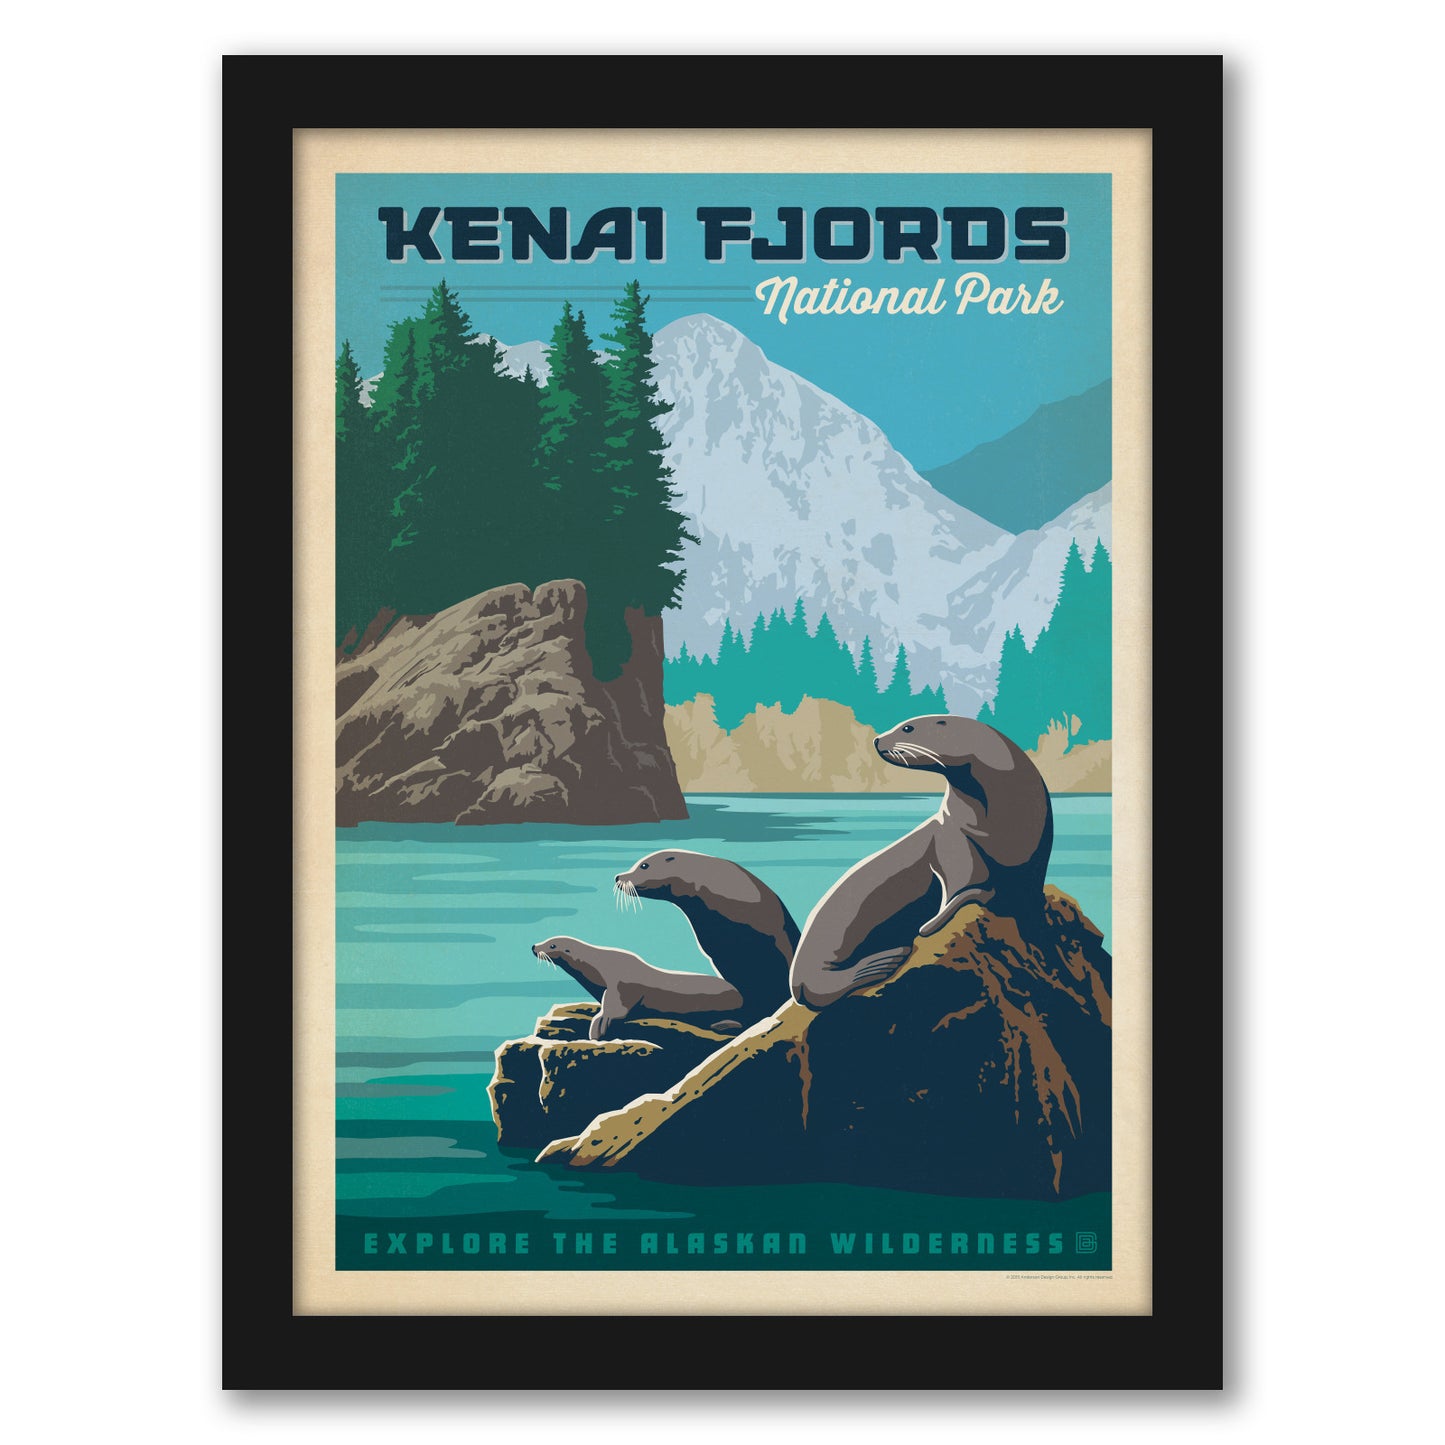 Kena fjords National Park by Anderson Design Group - Framed Print